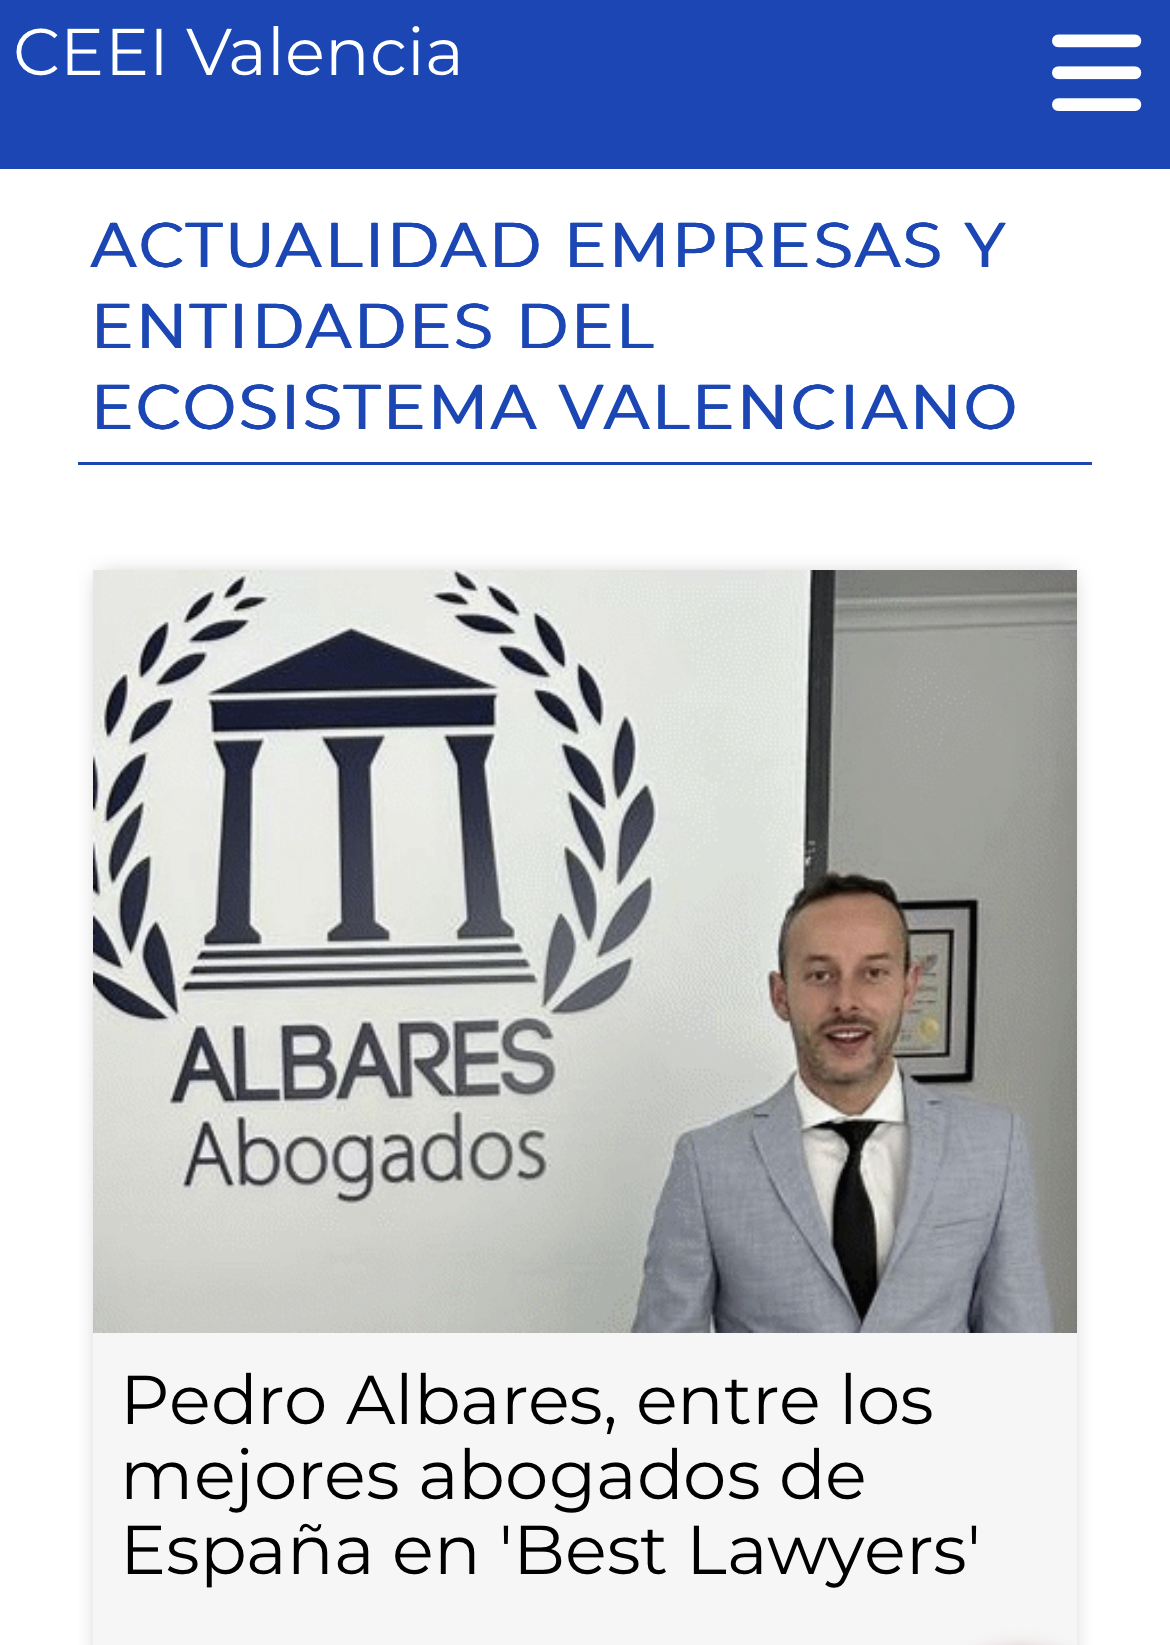 CEEI Valencia —_—

ACTUALIDAD EMPRESAS Y
ENTIDADES DEL
ECOSISTEMA VALENCIANO

 

  

Pedro Albares, entre los
mejores abogados de
Espana en 'Best Lawyers